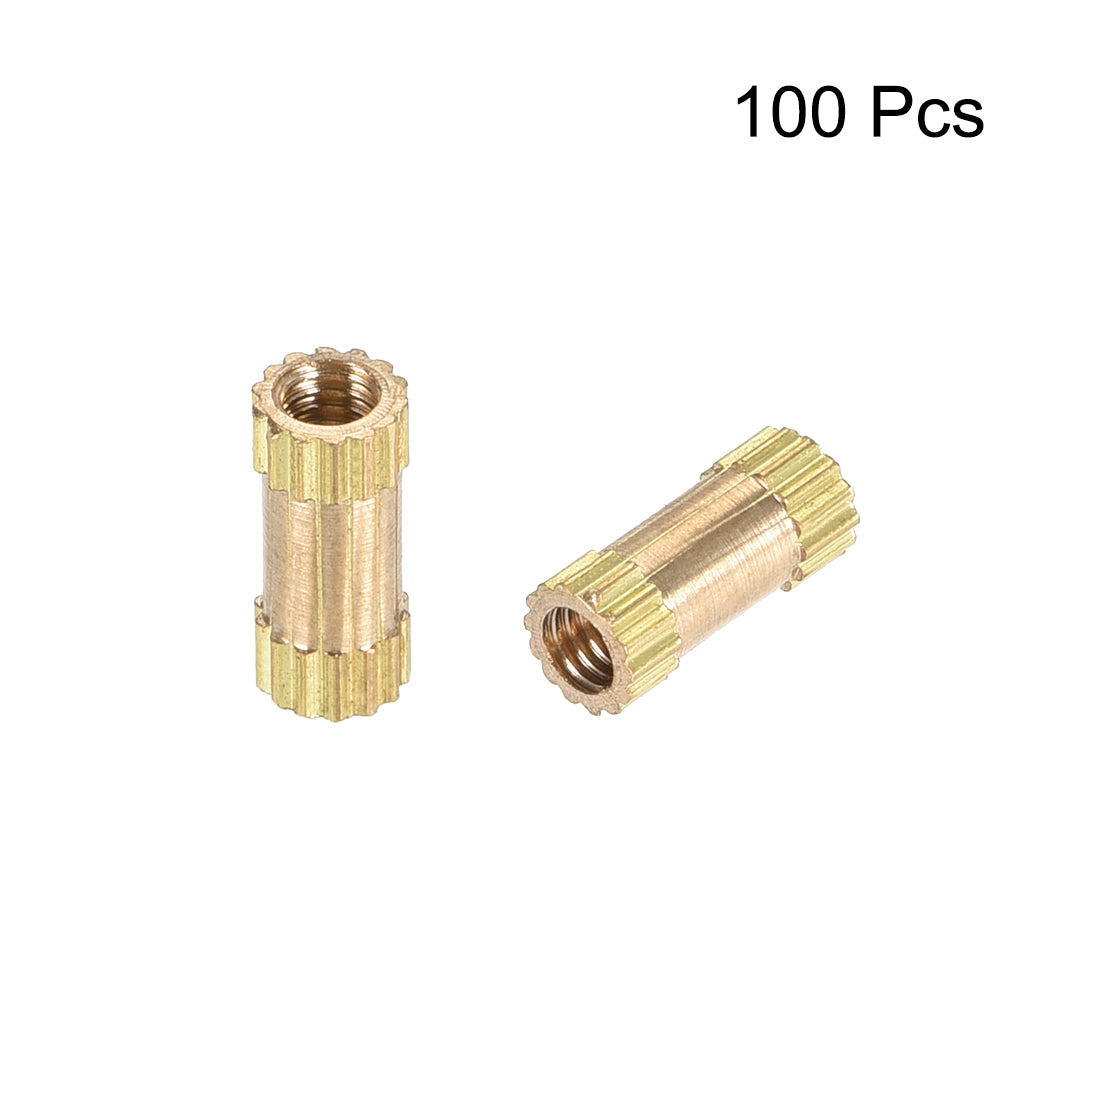 uxcell Uxcell Knurled Insert Nuts, M2.5 x 8mm(L) x 3.5mm(OD) Female Thread Brass Embedment Assortment Kit, 100 Pcs